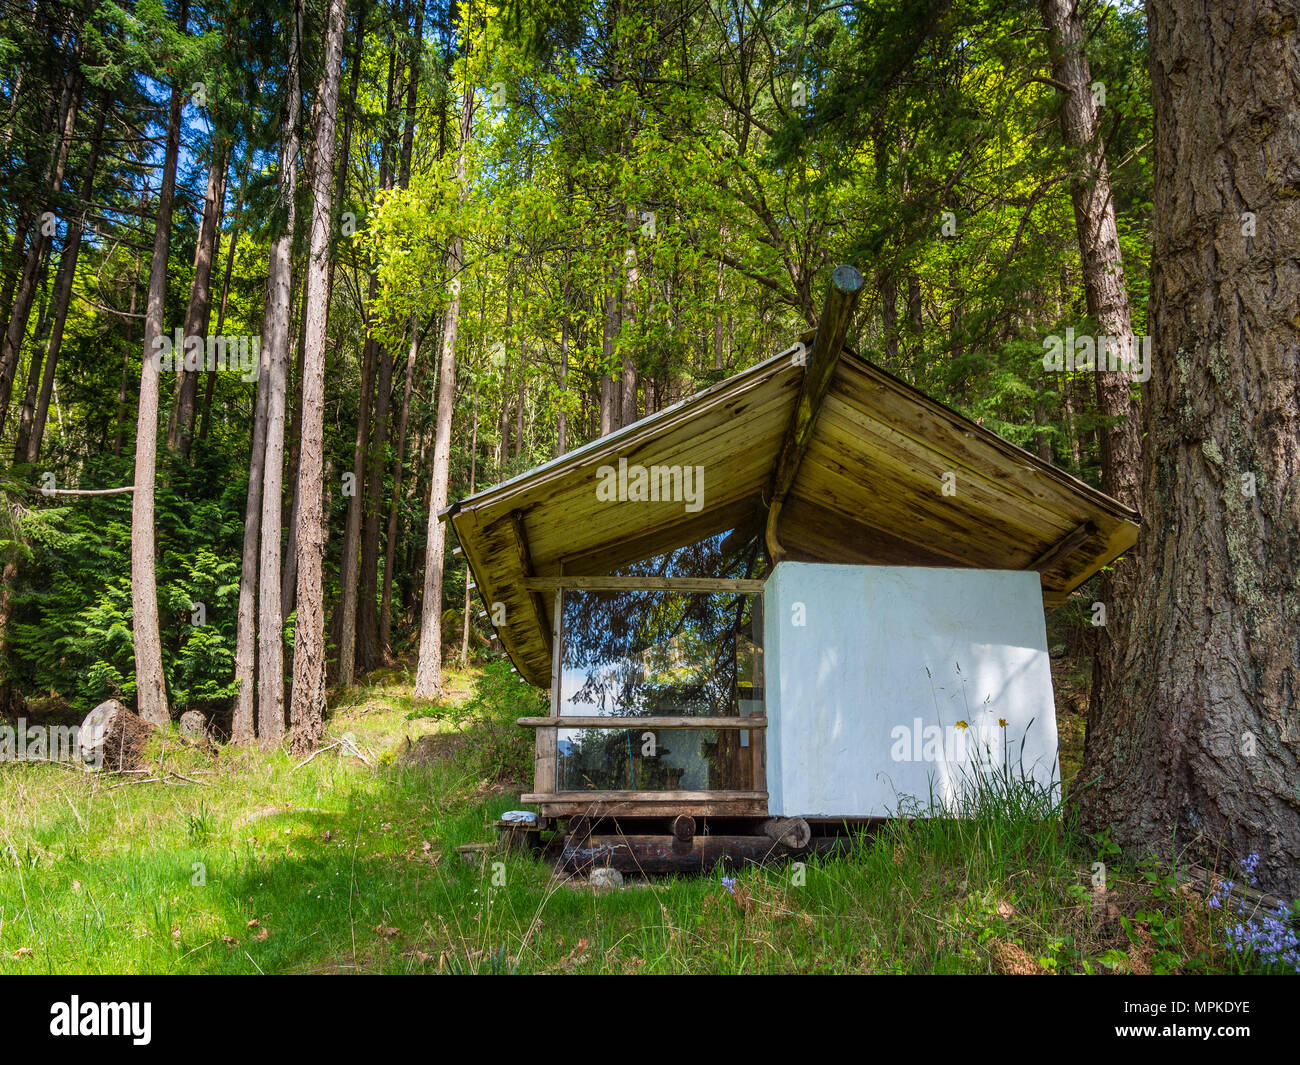 Minimalistische Hütte im Wald - Hornby Island, BC, Kanada. Stockfoto